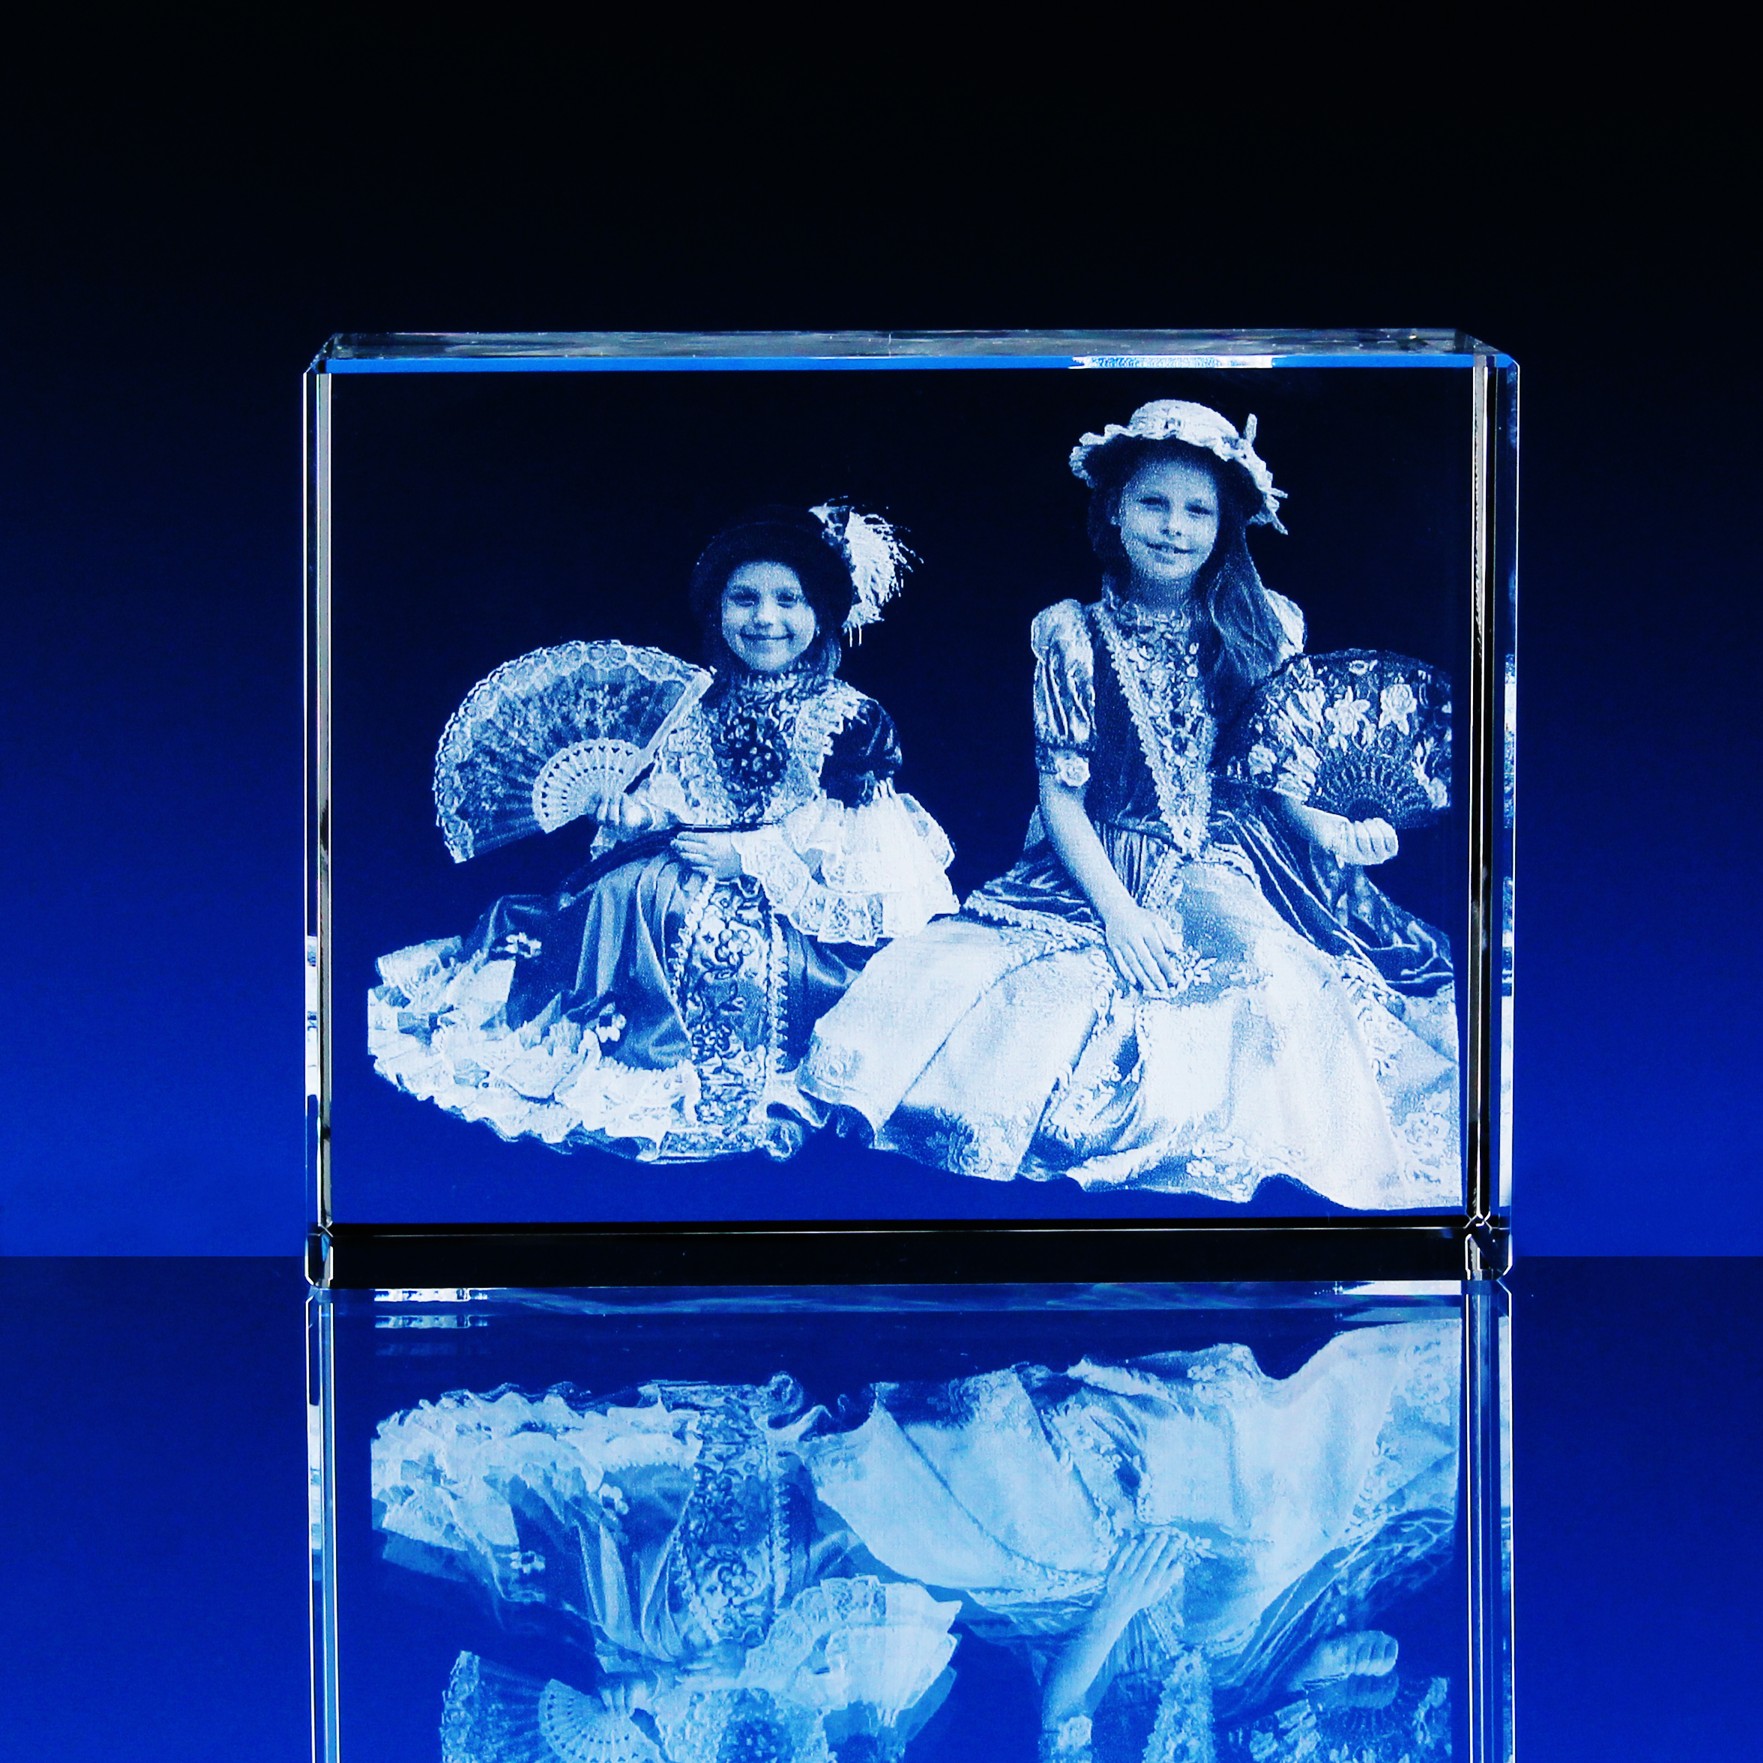 3D Laserovaná fotografie do skla - Portrét v kvádru 110x80x50 mm (P309a)